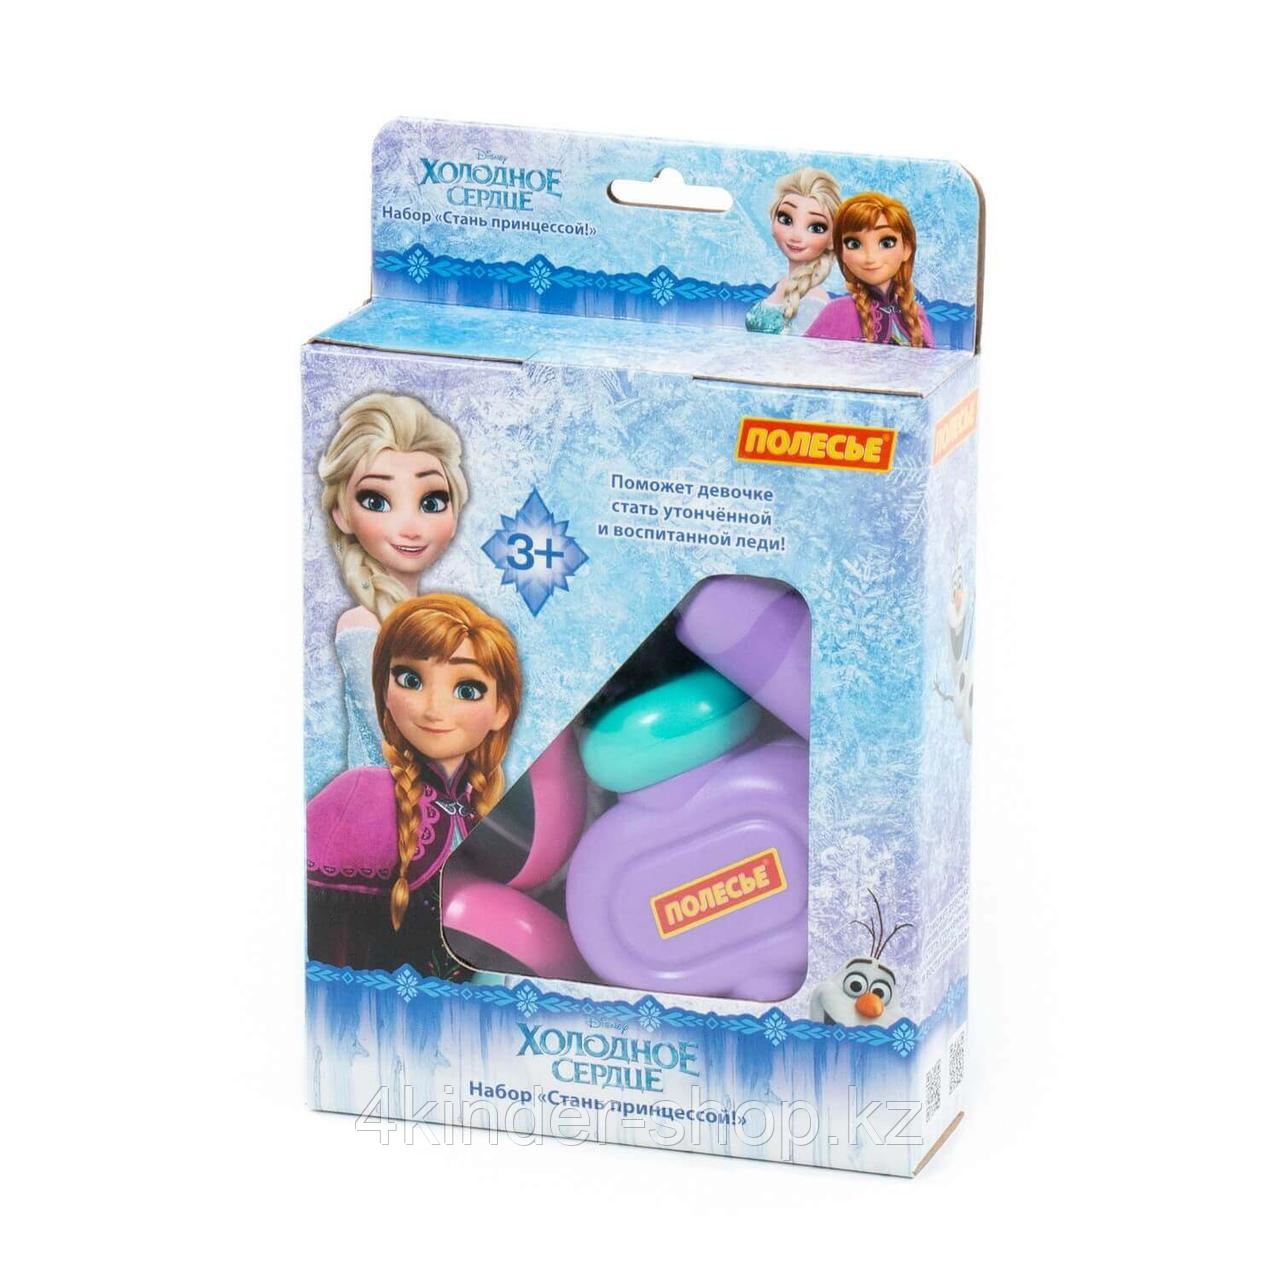 Набор Disney "Холодное сердце" - "Cтань принцессой!" (в коробке)